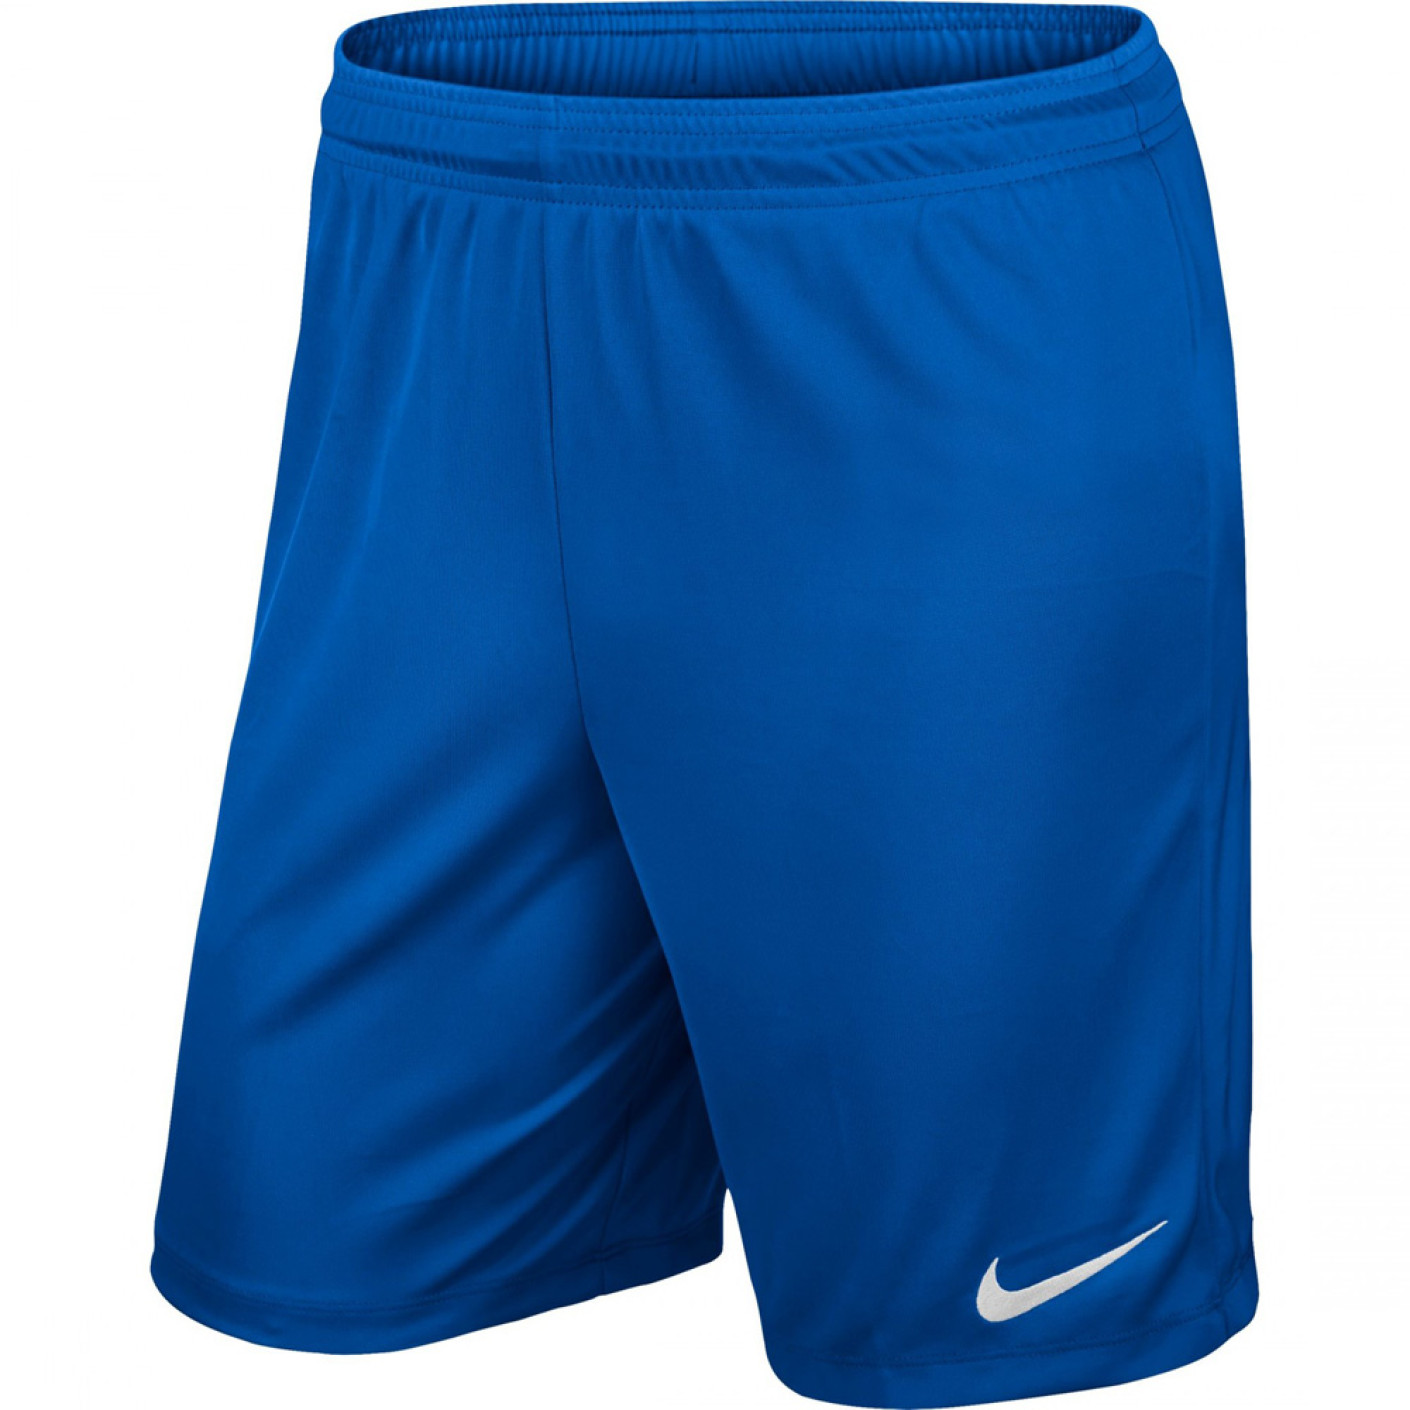 Pantalon en tricot Nike Park II Bleu roi